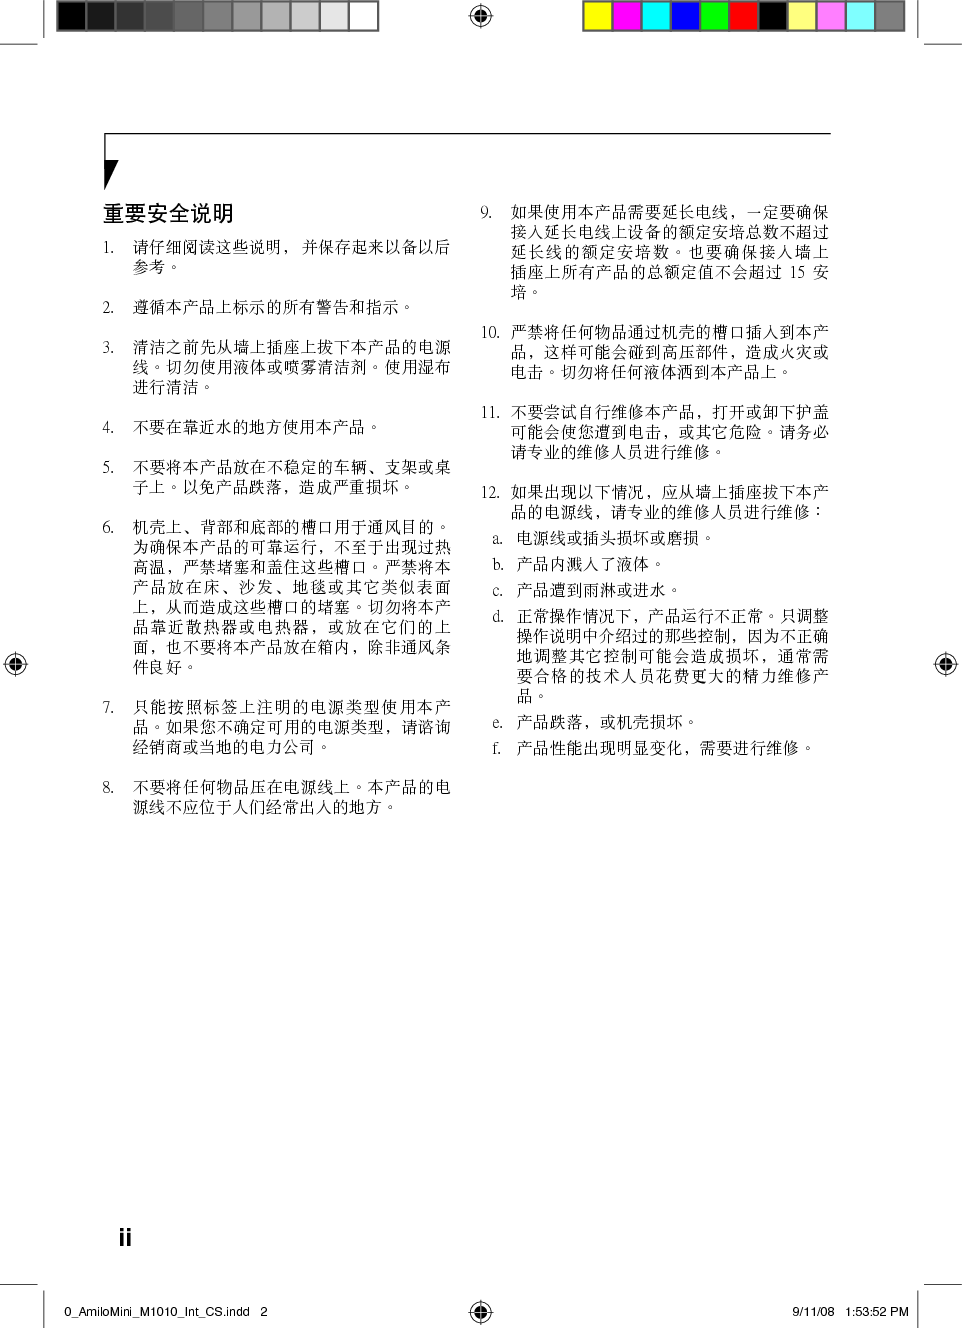 富士通 Fujitsu LifeBook M1010 使用说明书 第1页